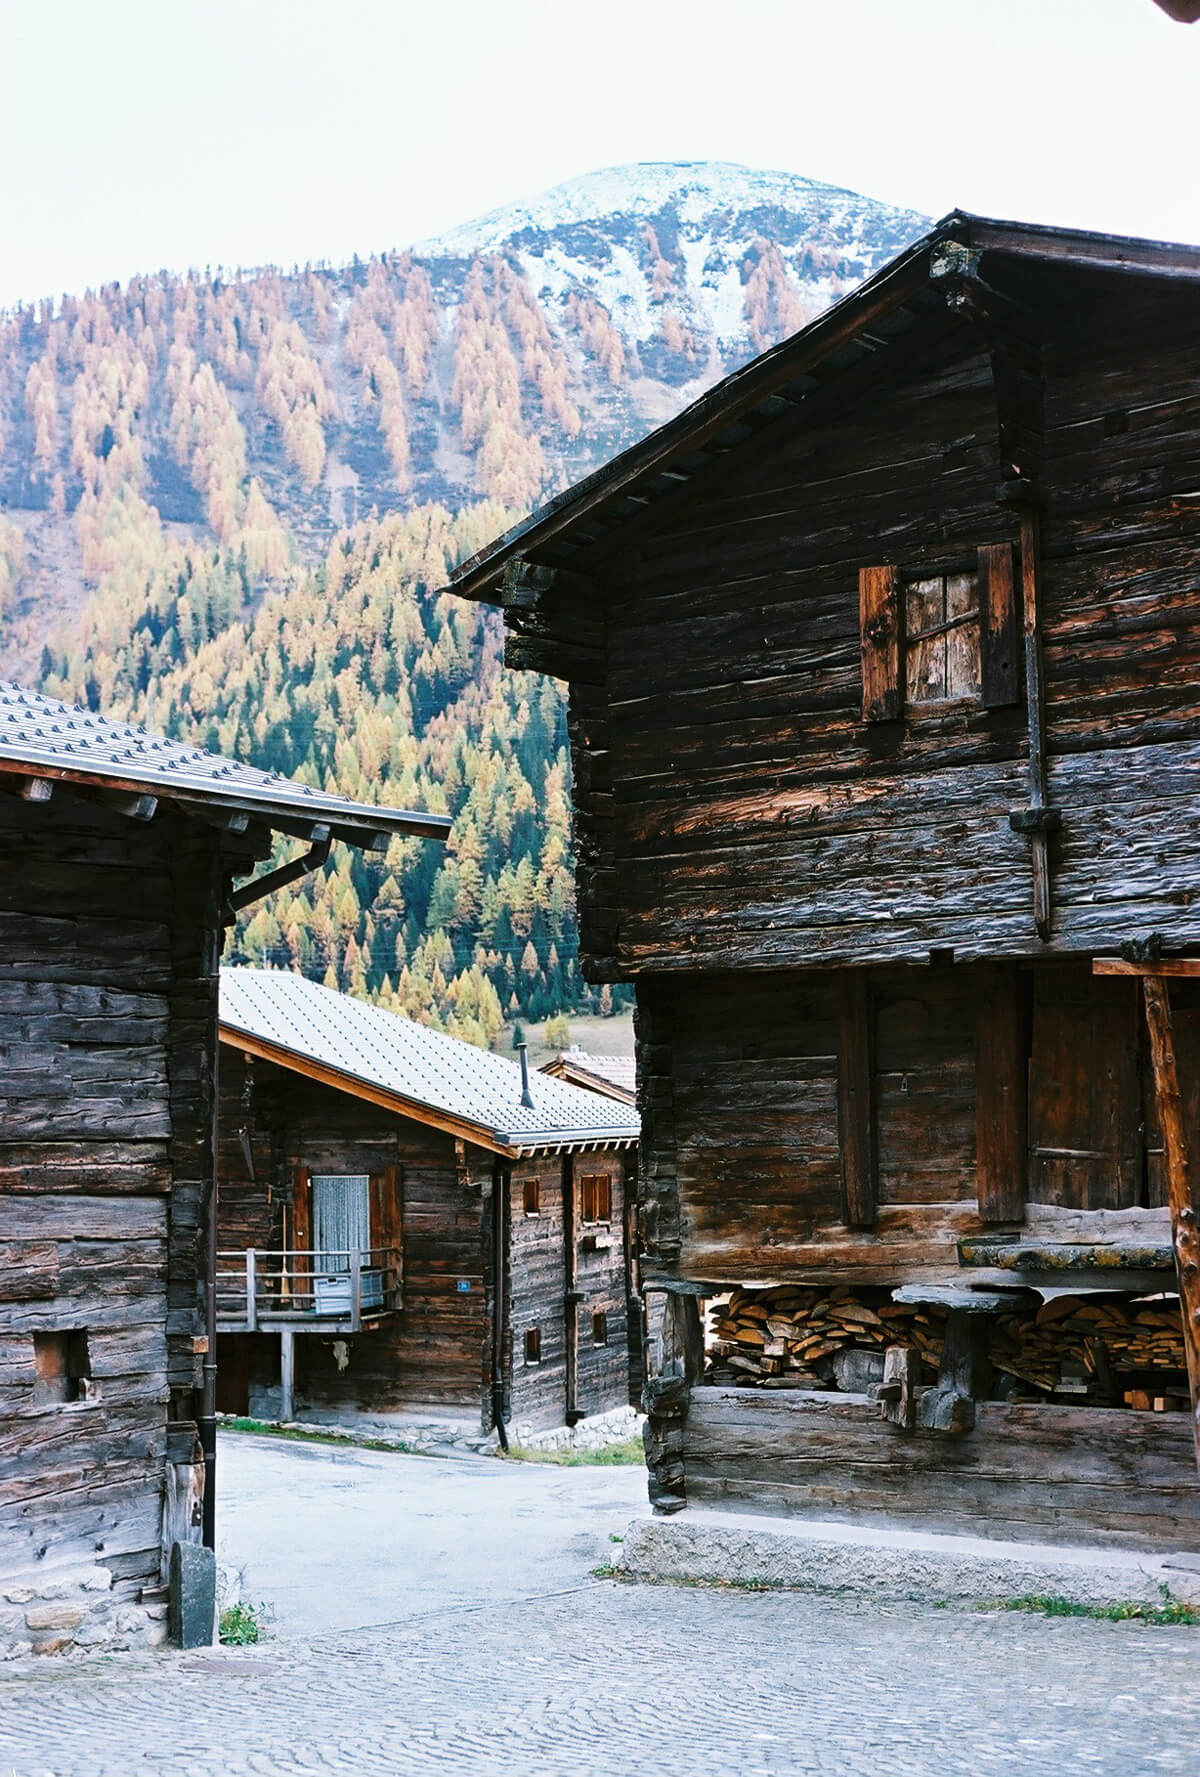 Münster-Geschinen Village, Switzerland